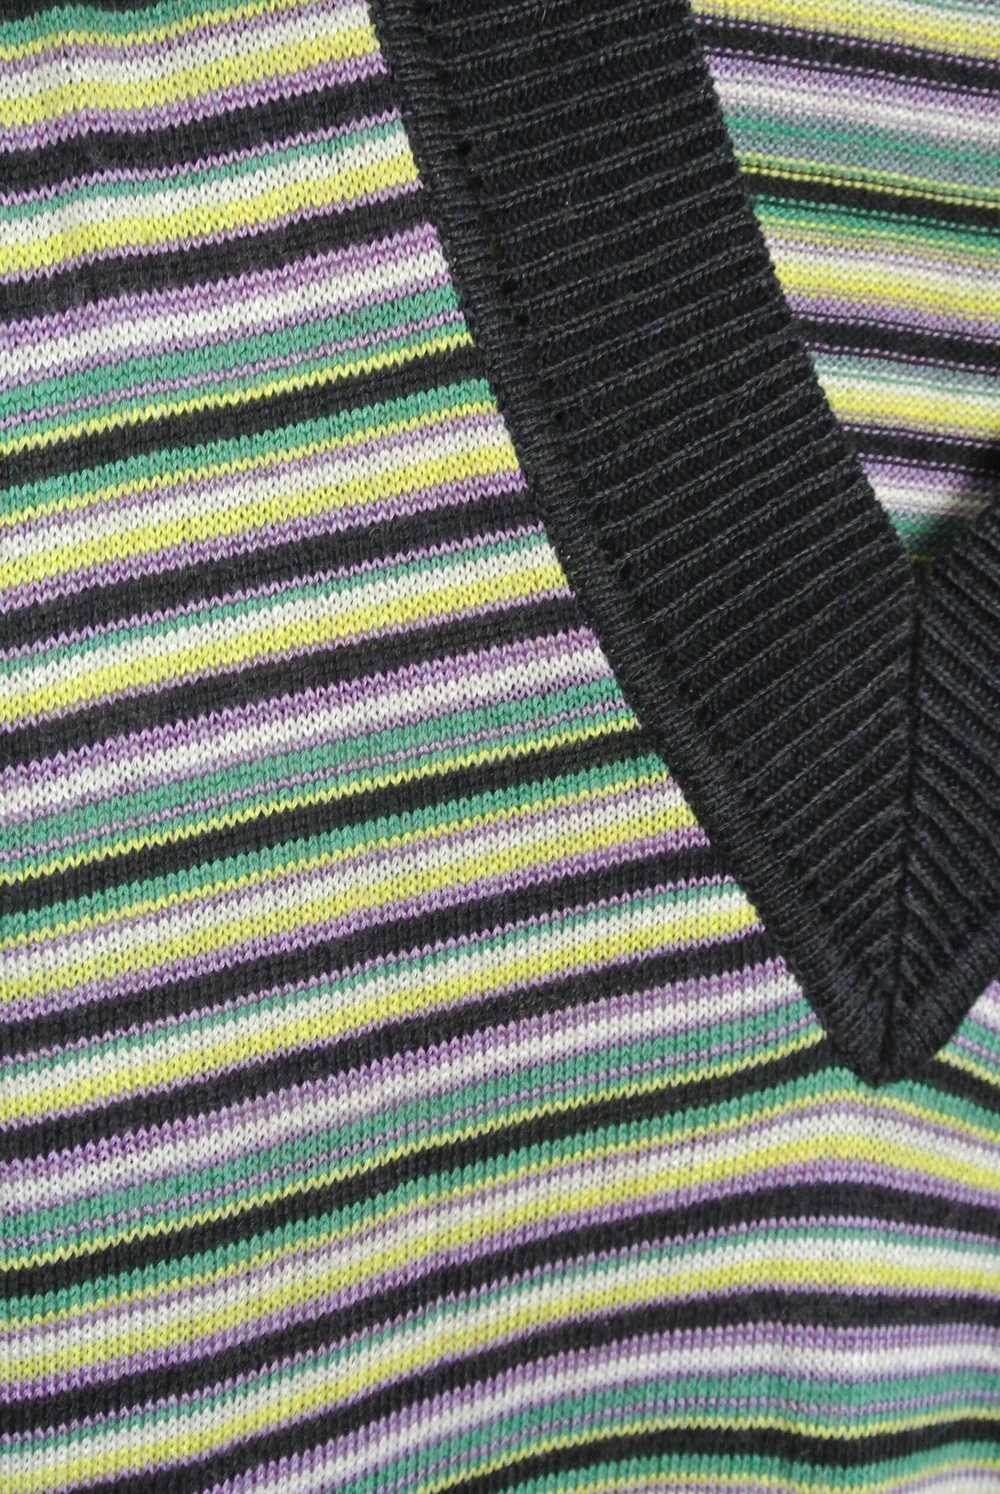 Pierre Cardin knit dress - image 3